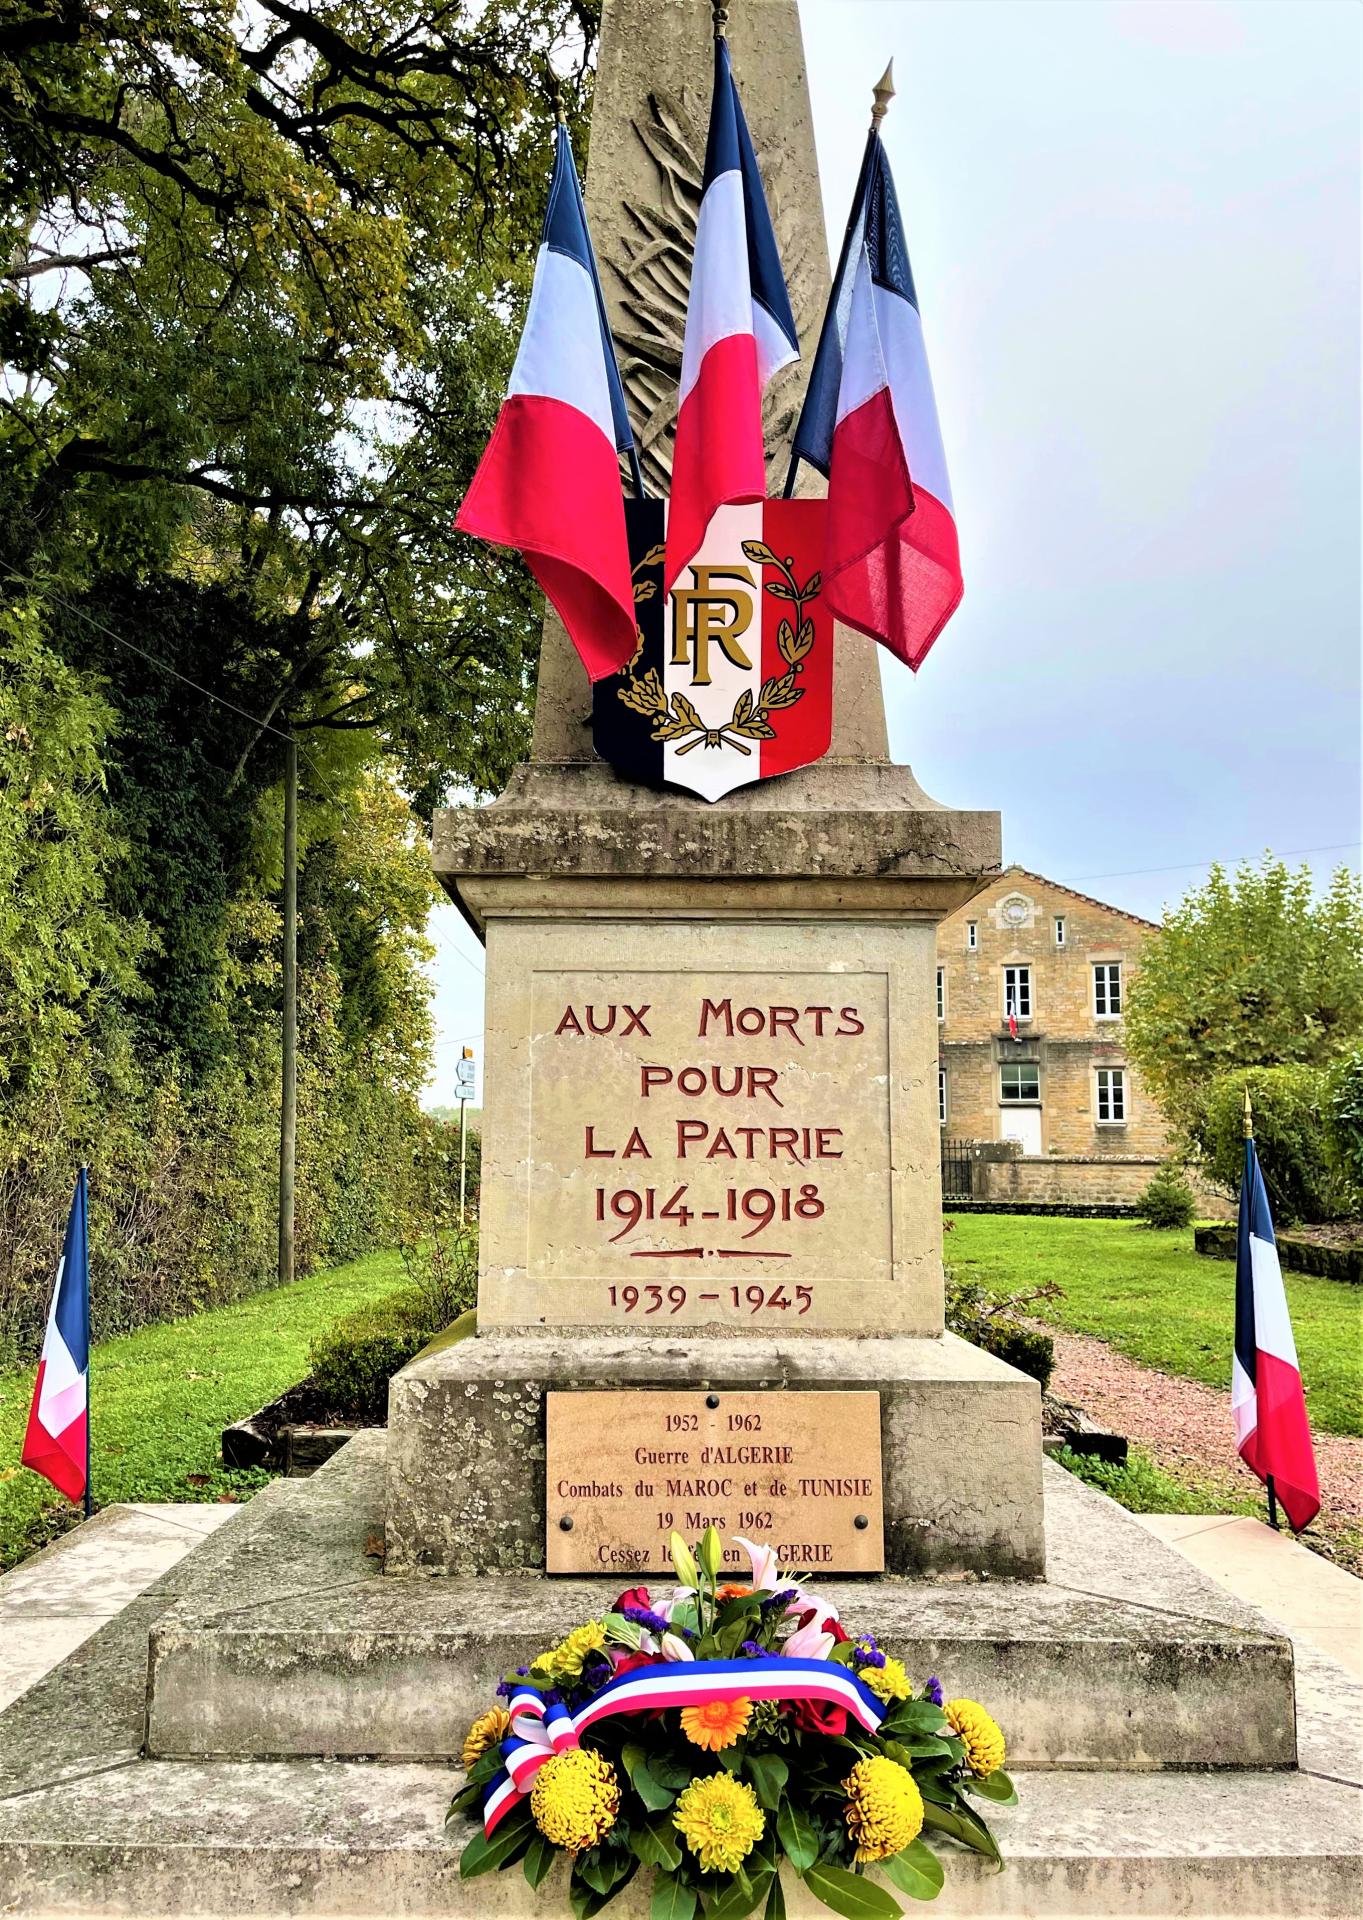 monument aux morts avec ses drapeaux tricolores et sa gerbe de fleurs